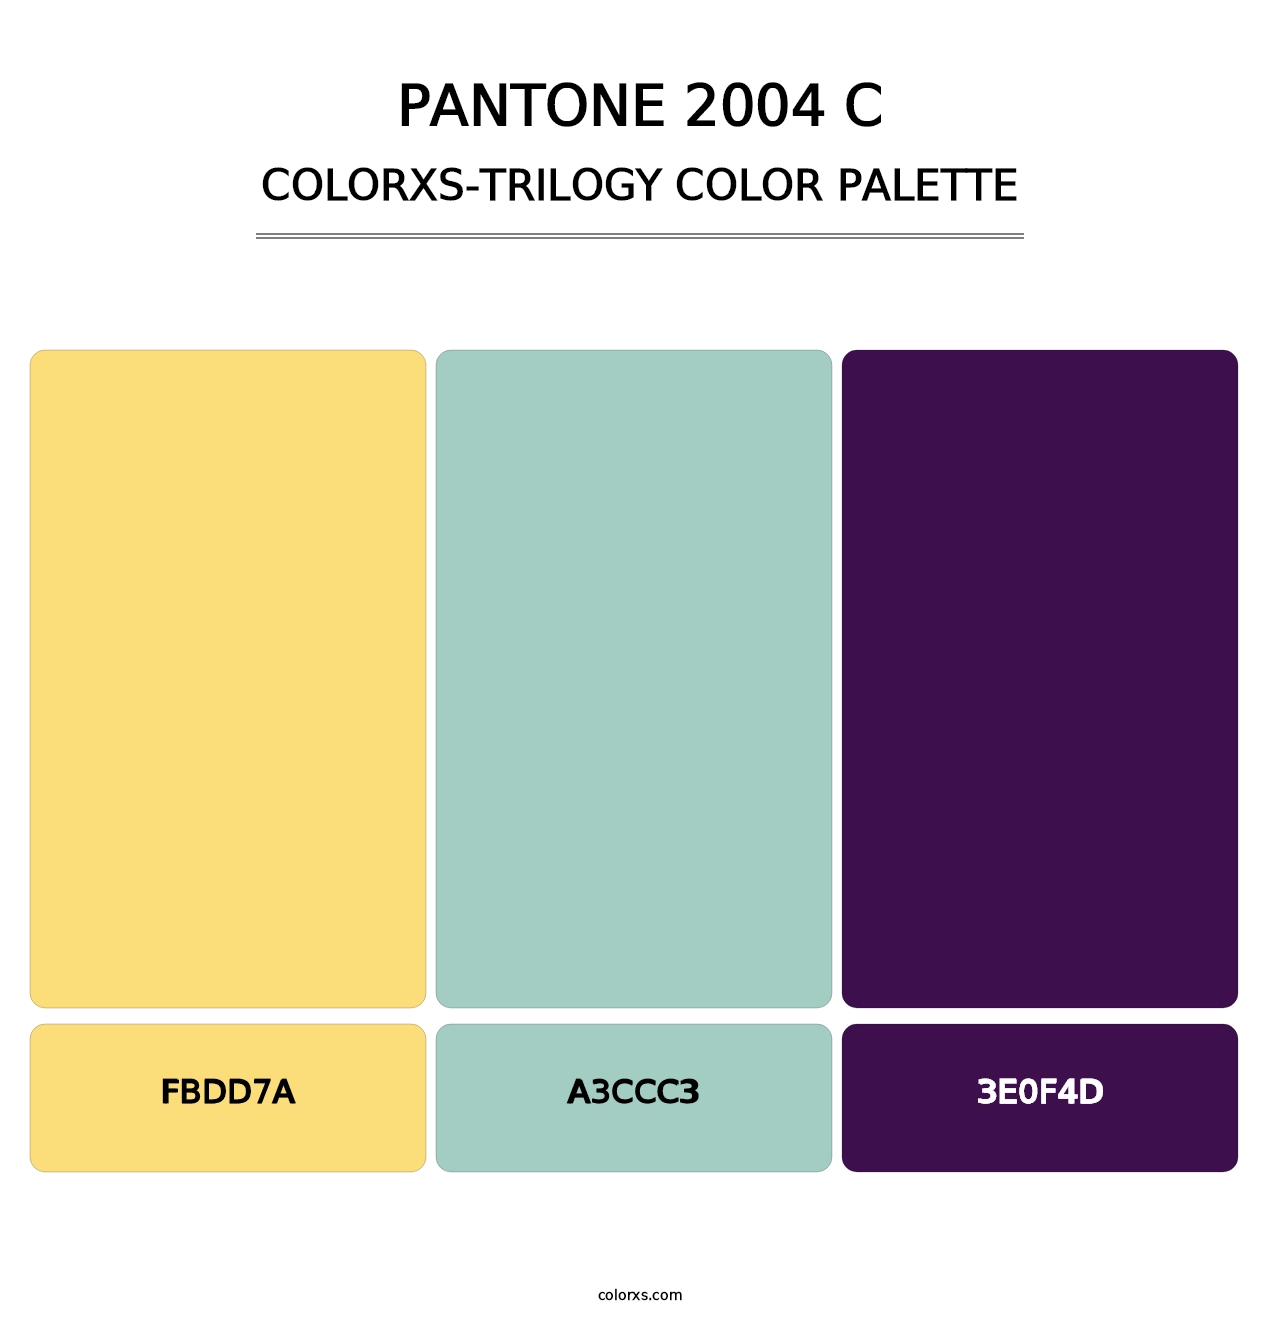 PANTONE 2004 C - Colorxs Trilogy Palette